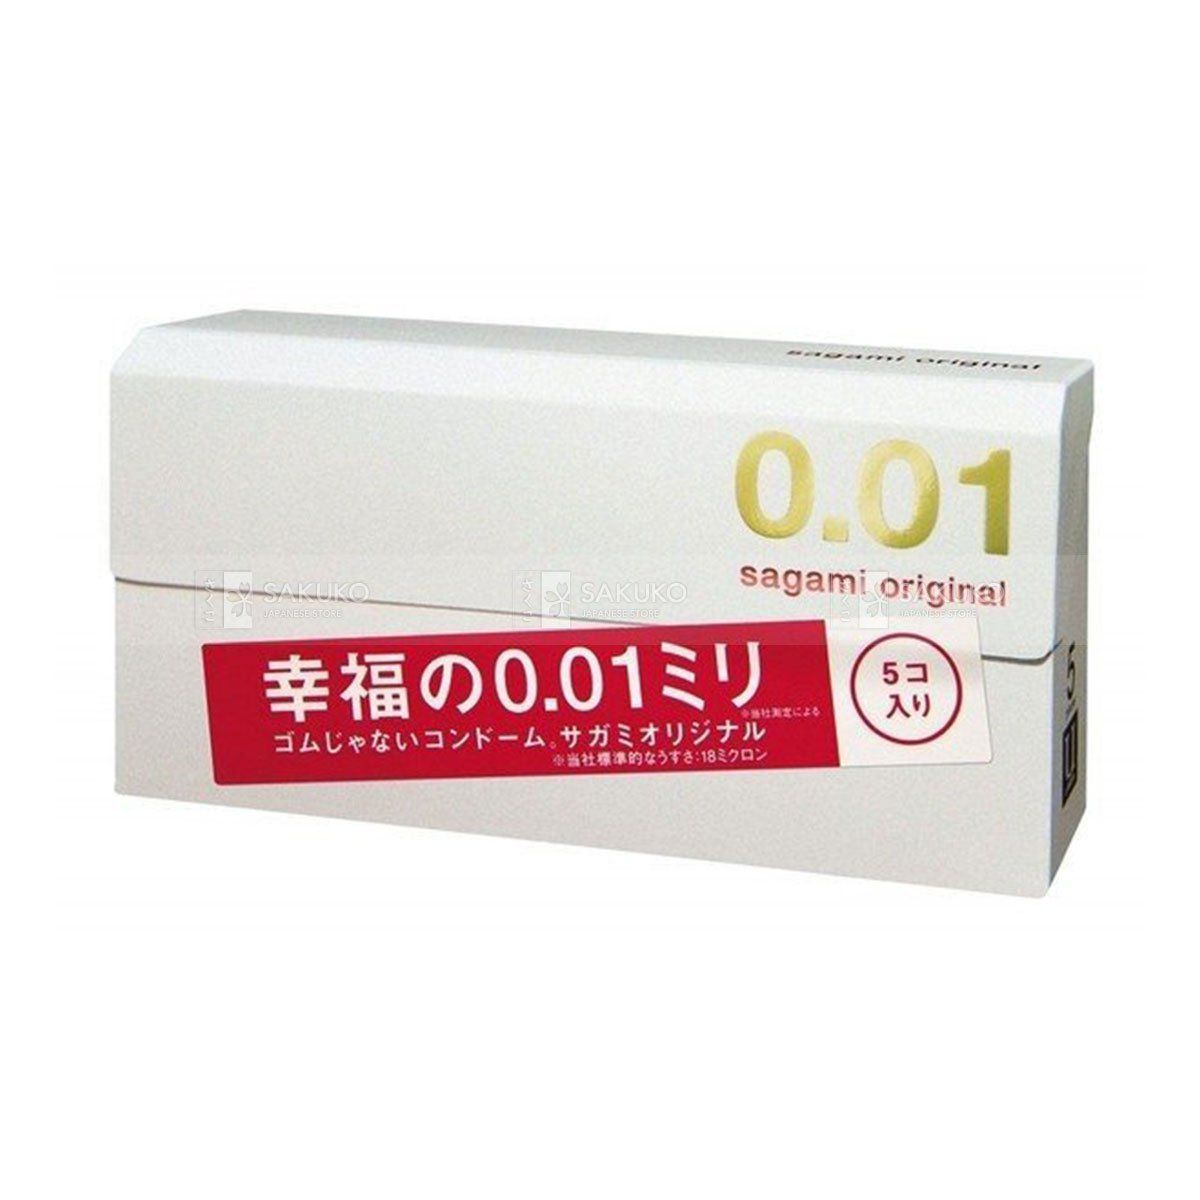  SAGAMI- Bao cao su Original 0.01 (5 chiếc) 